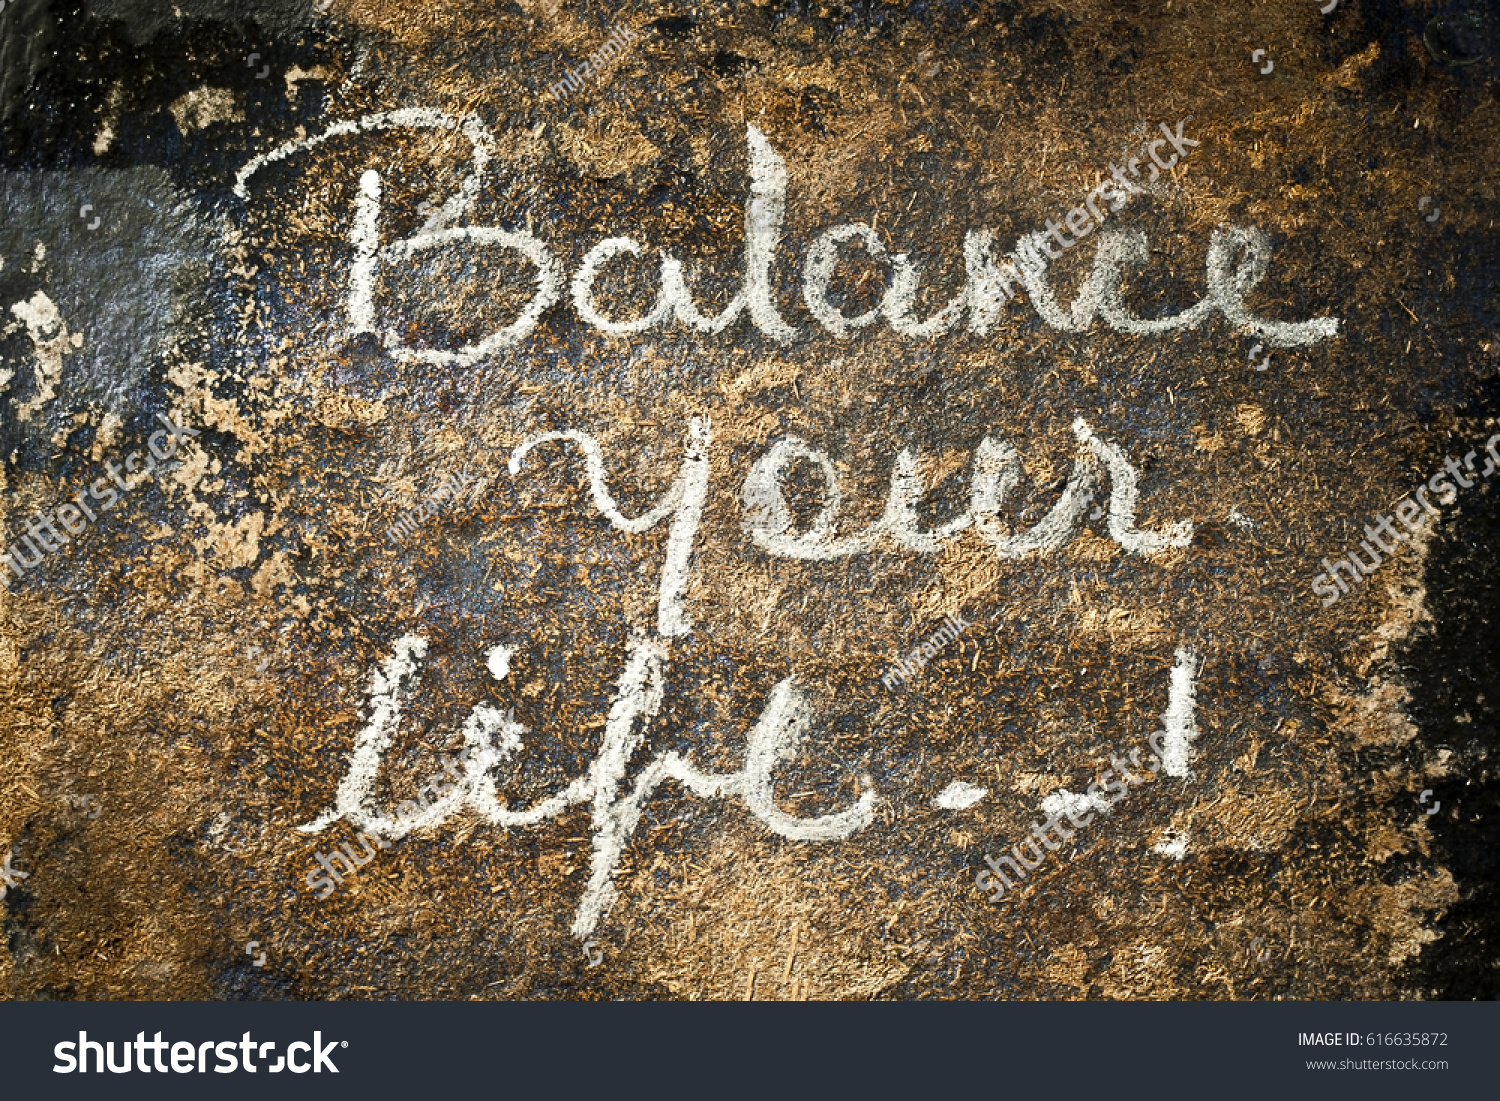 Balance Your Life written Text written on a surface. #616635872